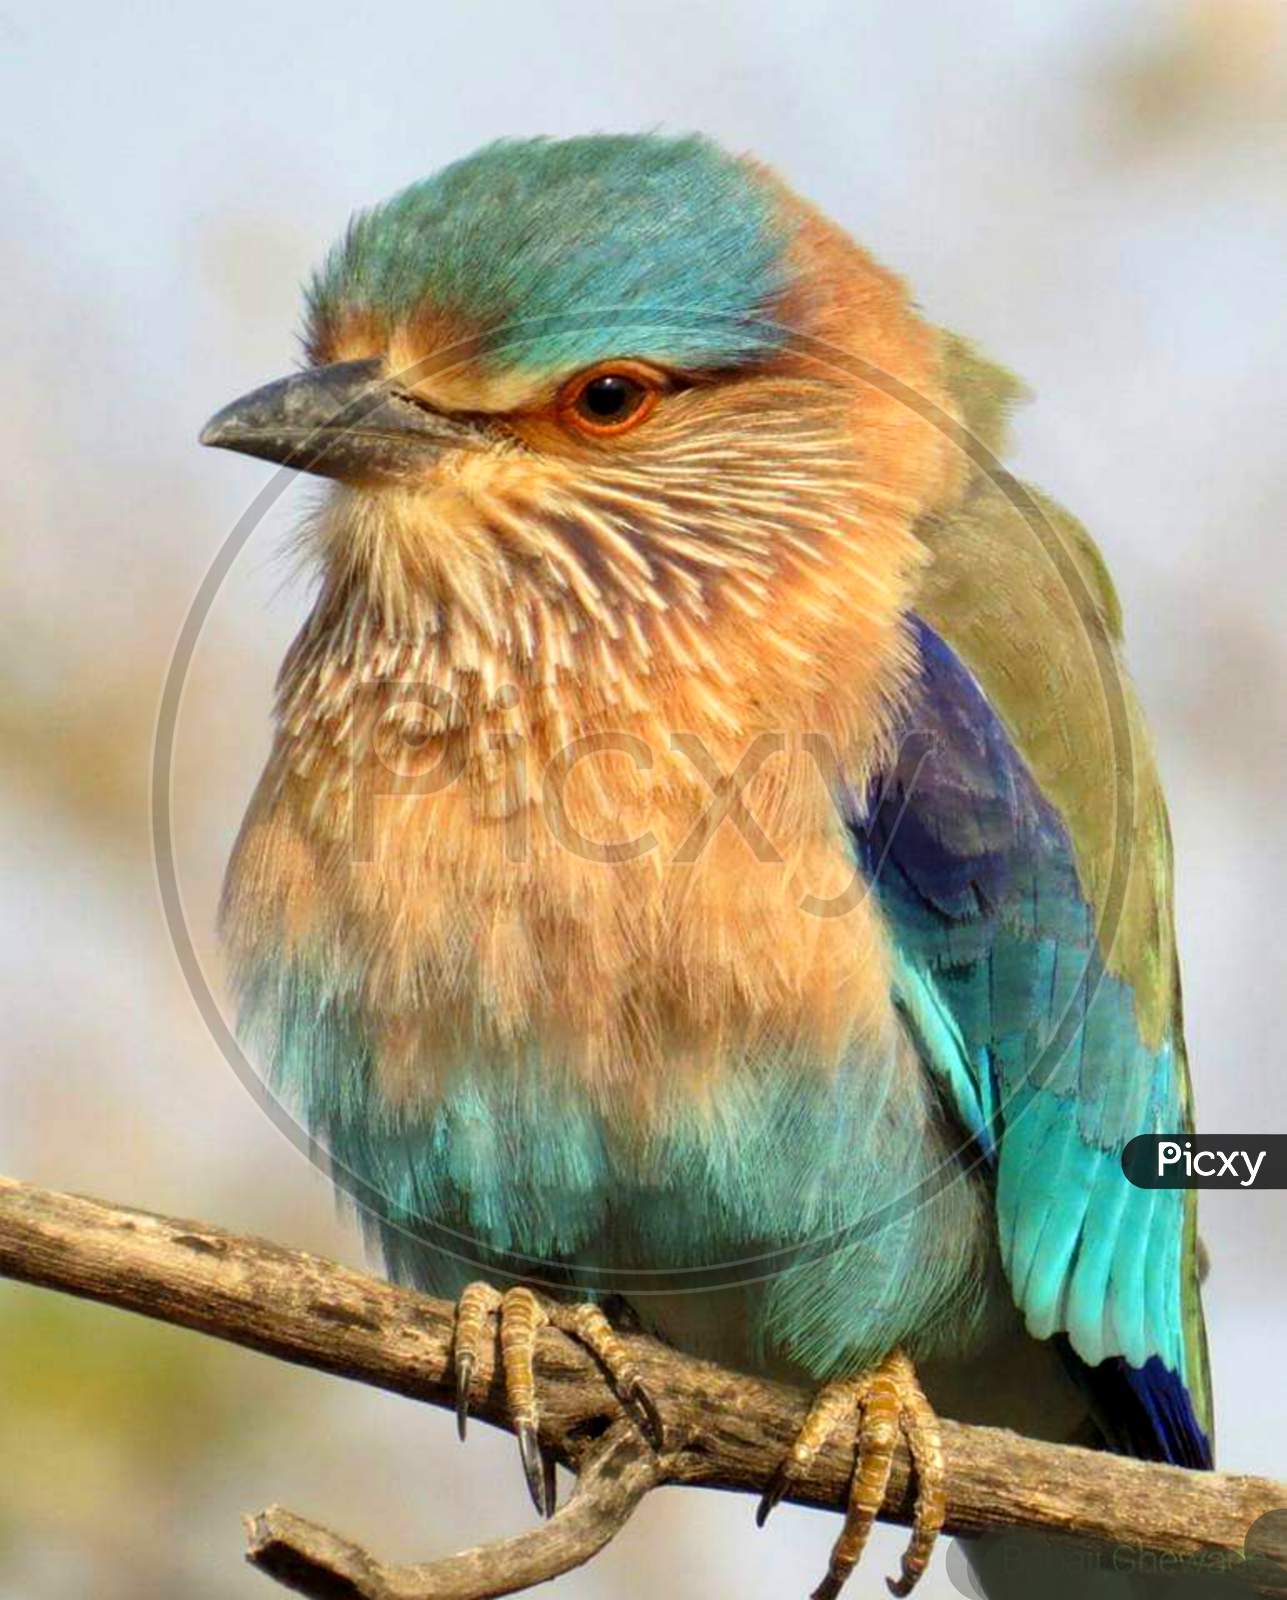 Colorful Indian roller bird. Closeup photo beautiful eyes